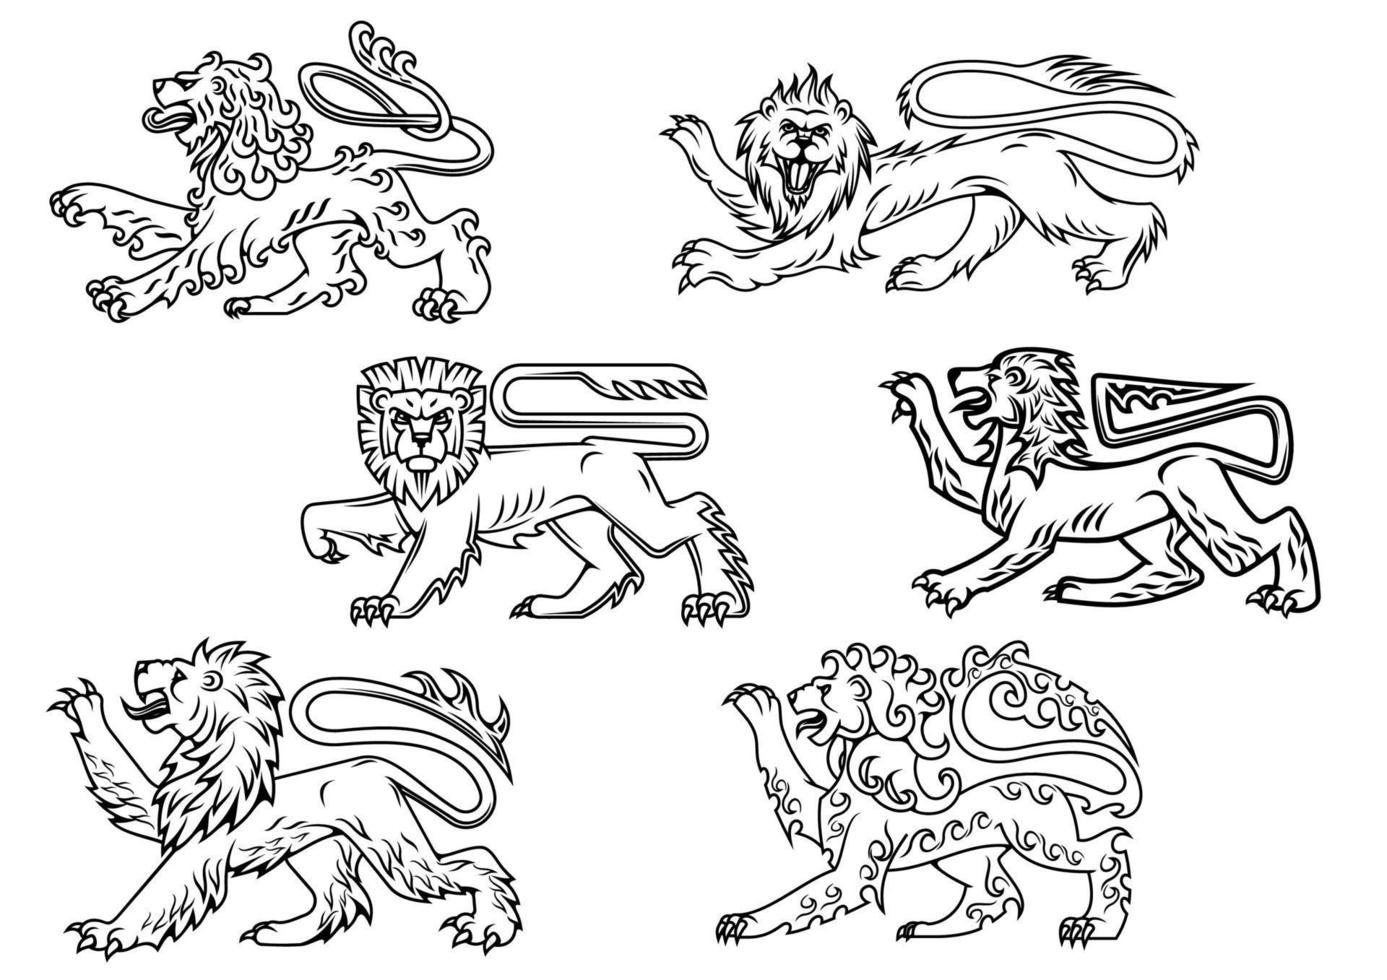 vintage heraldische löwen gesetzt vektor